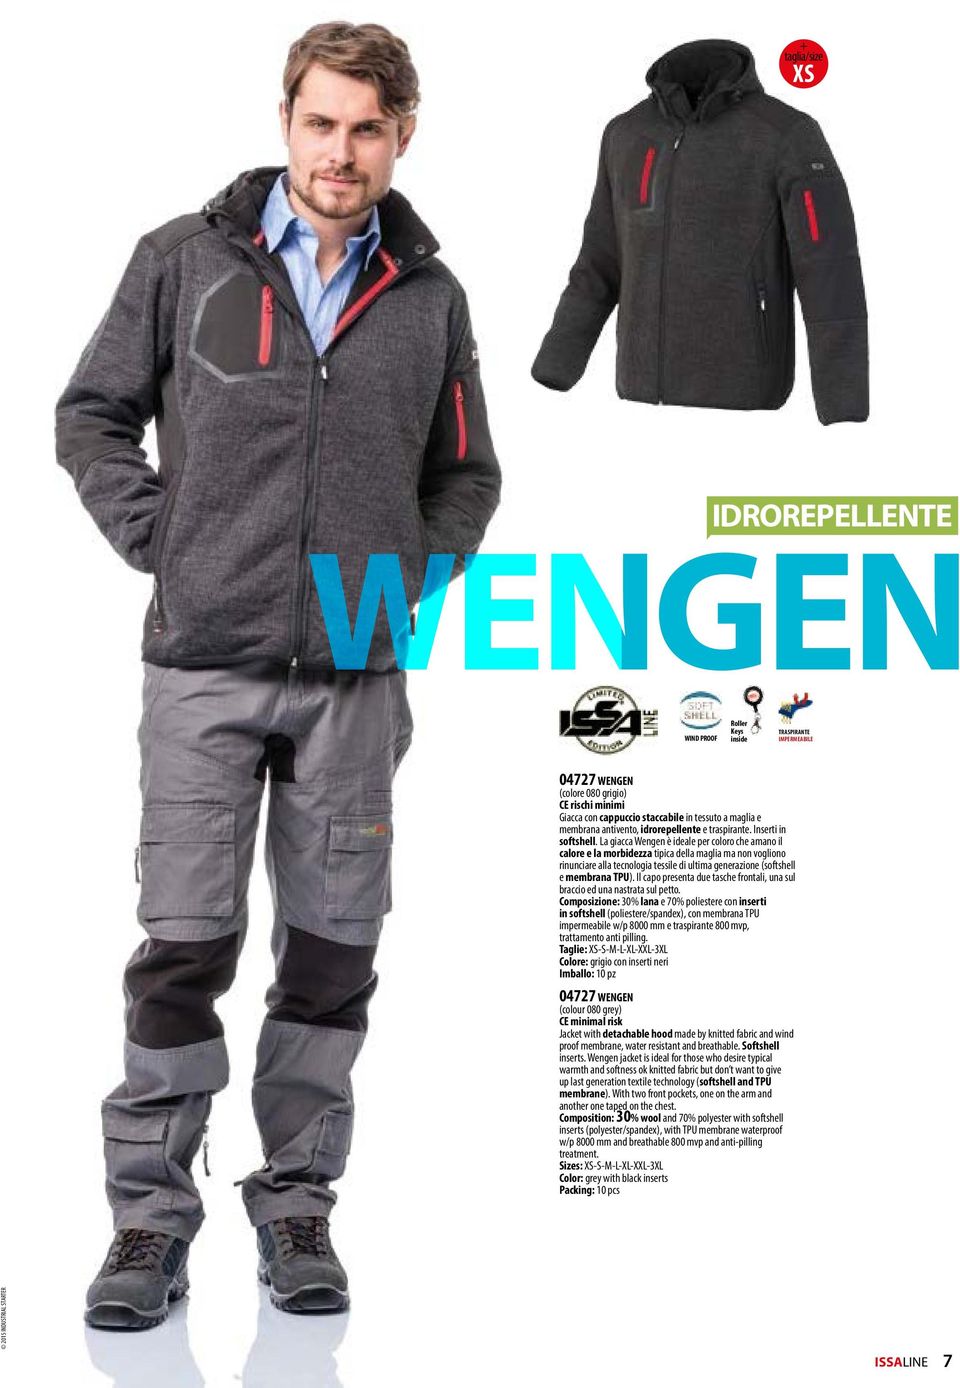 La giacca Wengen è ideale per coloro che amano il calore e la morbidezza tipica della maglia ma non vogliono rinunciare alla tecnologia tessile di ultima generazione (softshell e membrana TPU).